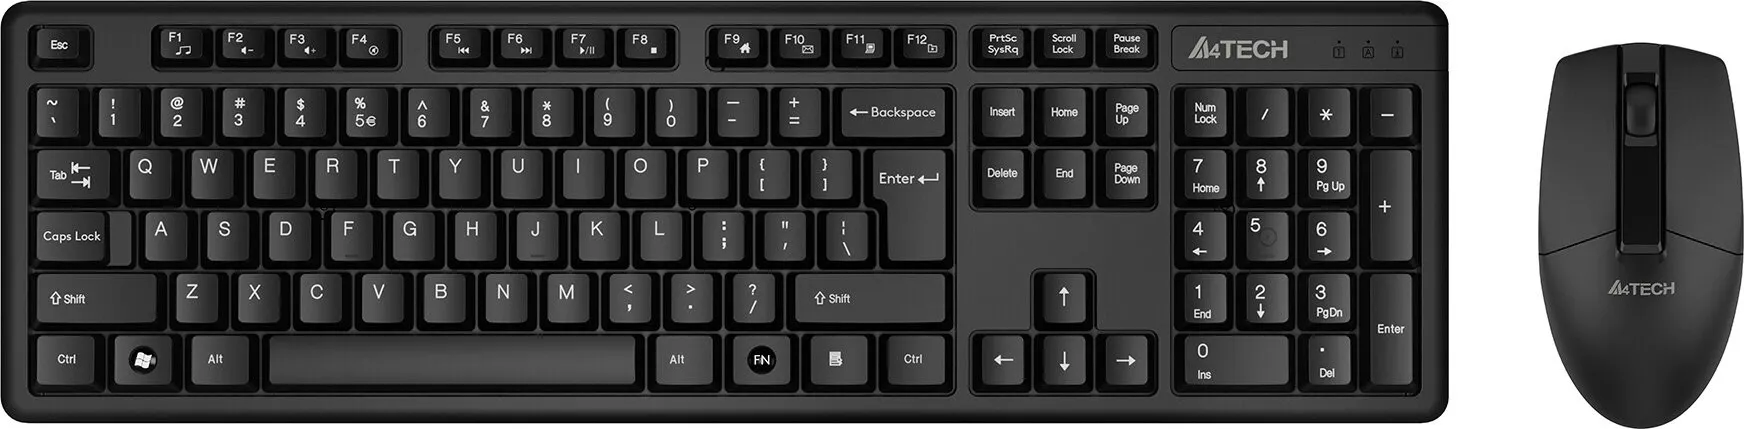 Фото №0 Клавиатура и мышь A4TECH мыши и клавиатуры 3330N черный USB Комплект и